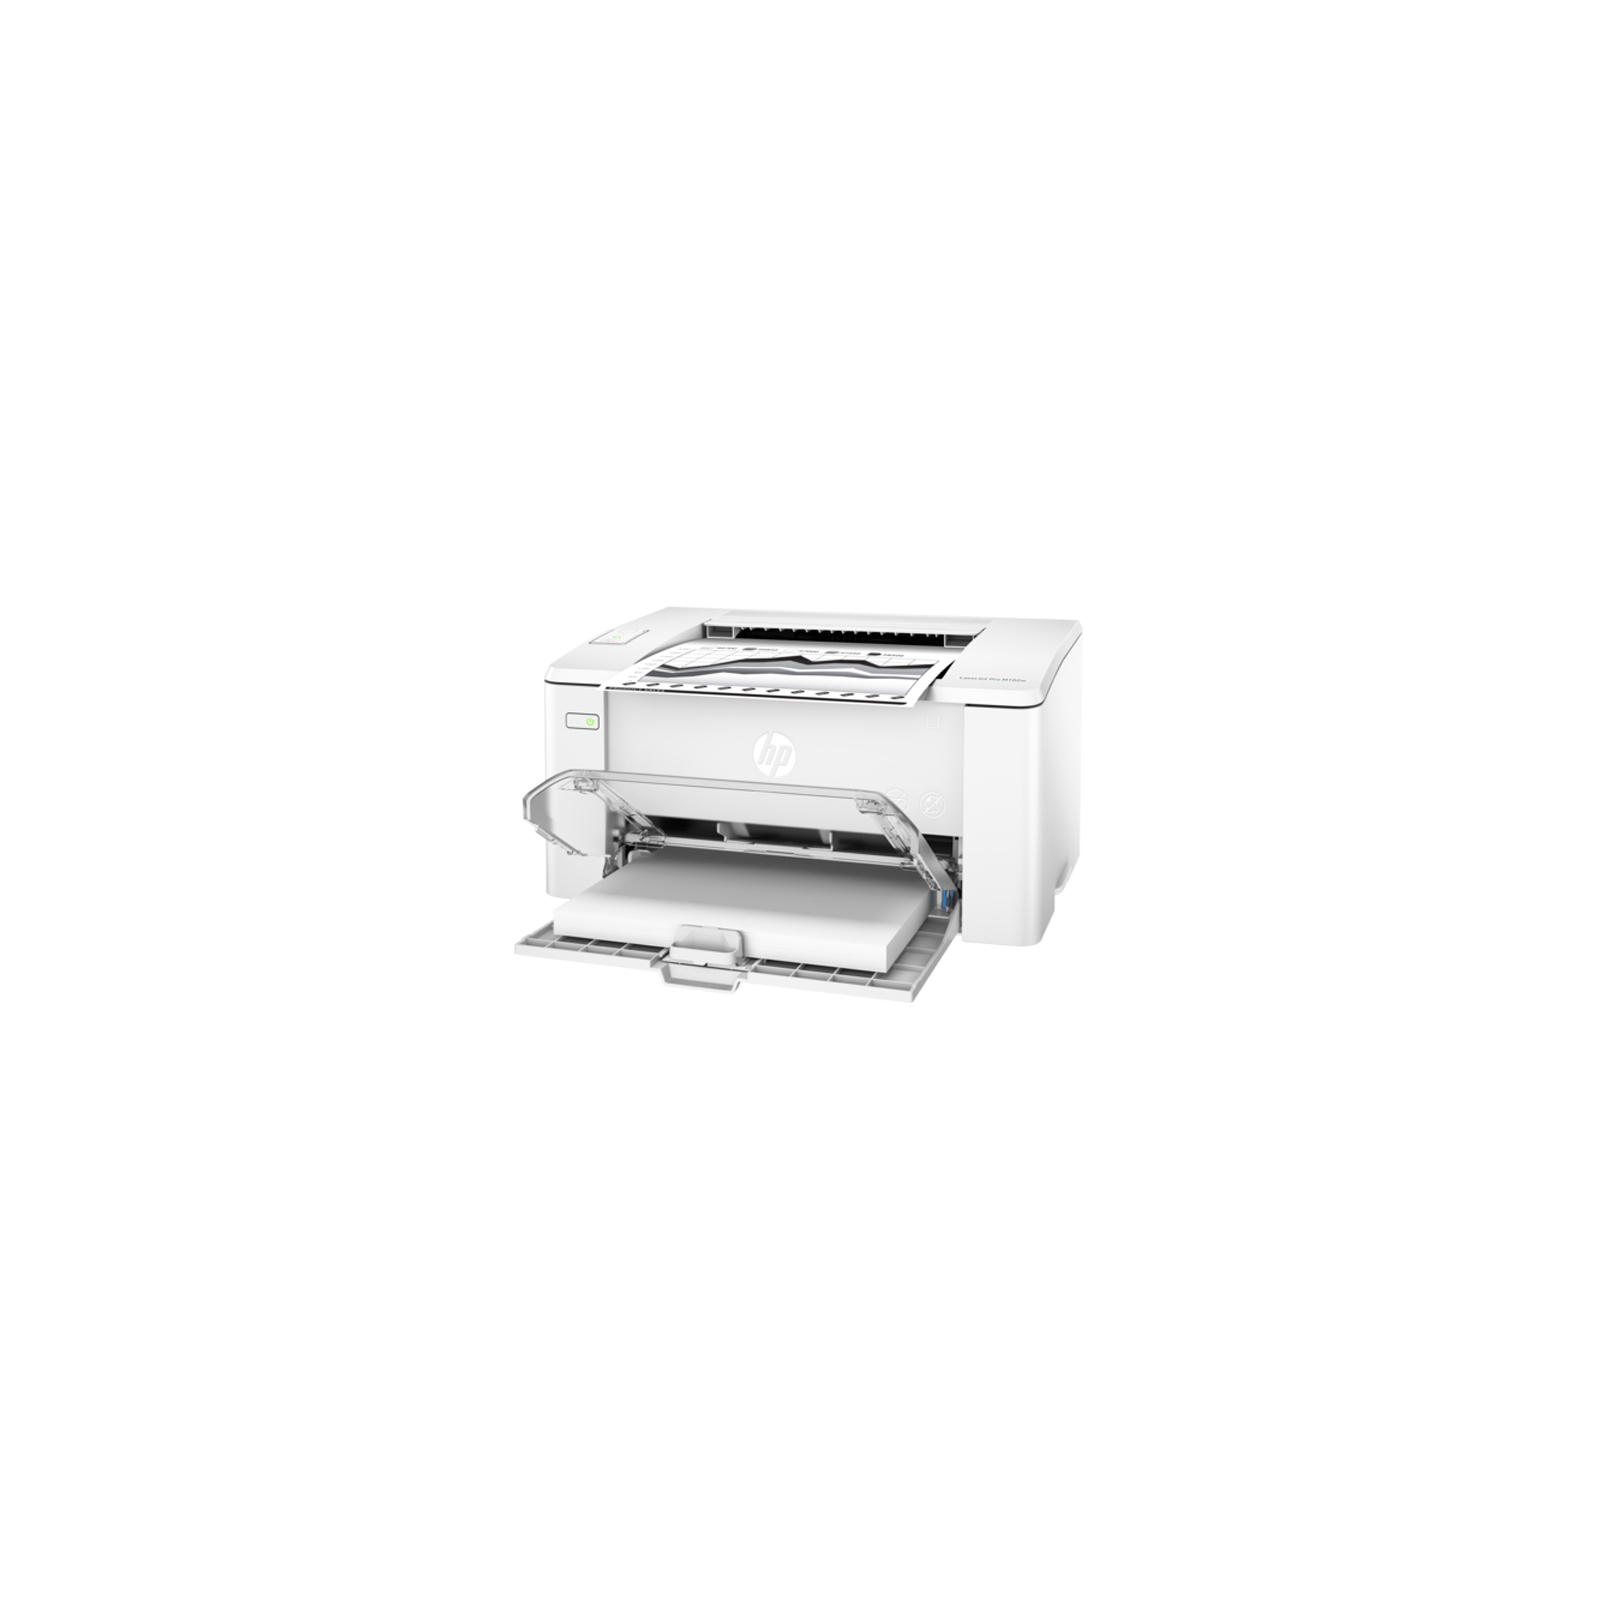 Лазерный принтер HP LaserJet Pro M102w c Wi-Fi (G3Q35A) изображение 5